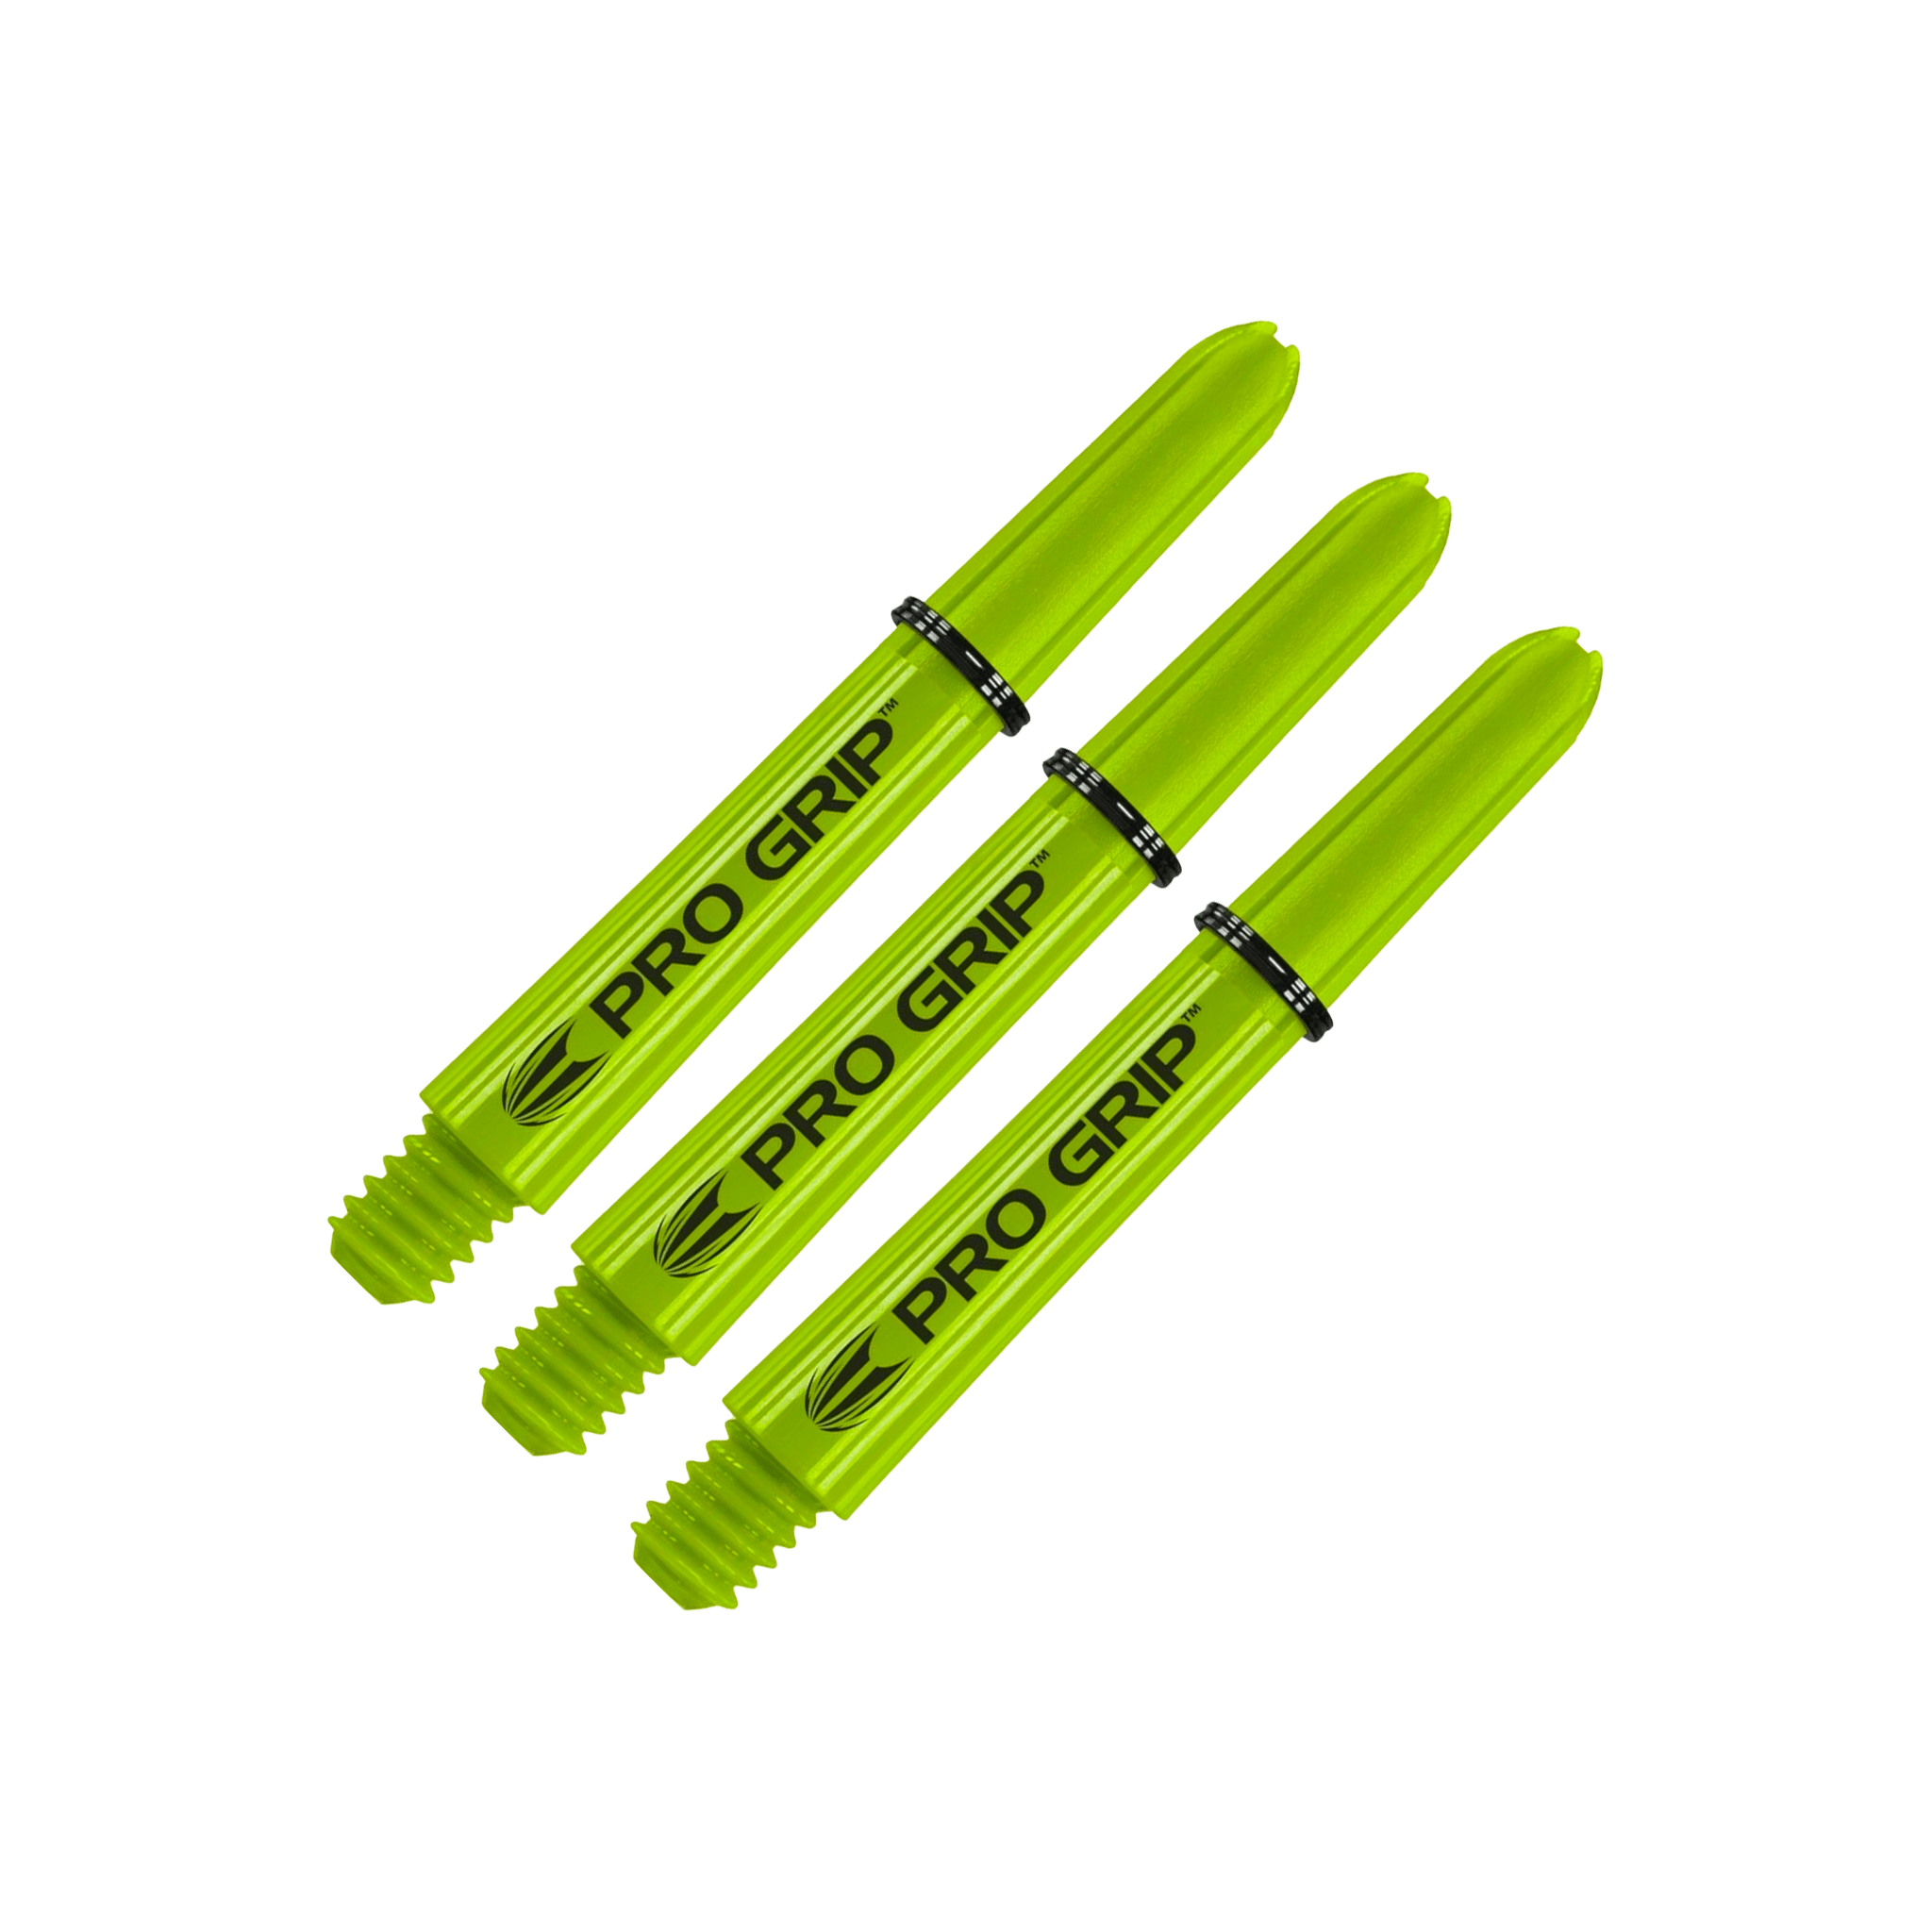 Target Pro Grip Multi Pack - Nylon Dart Shafts (3 Sets) Lime / Short (34mm) Shafts